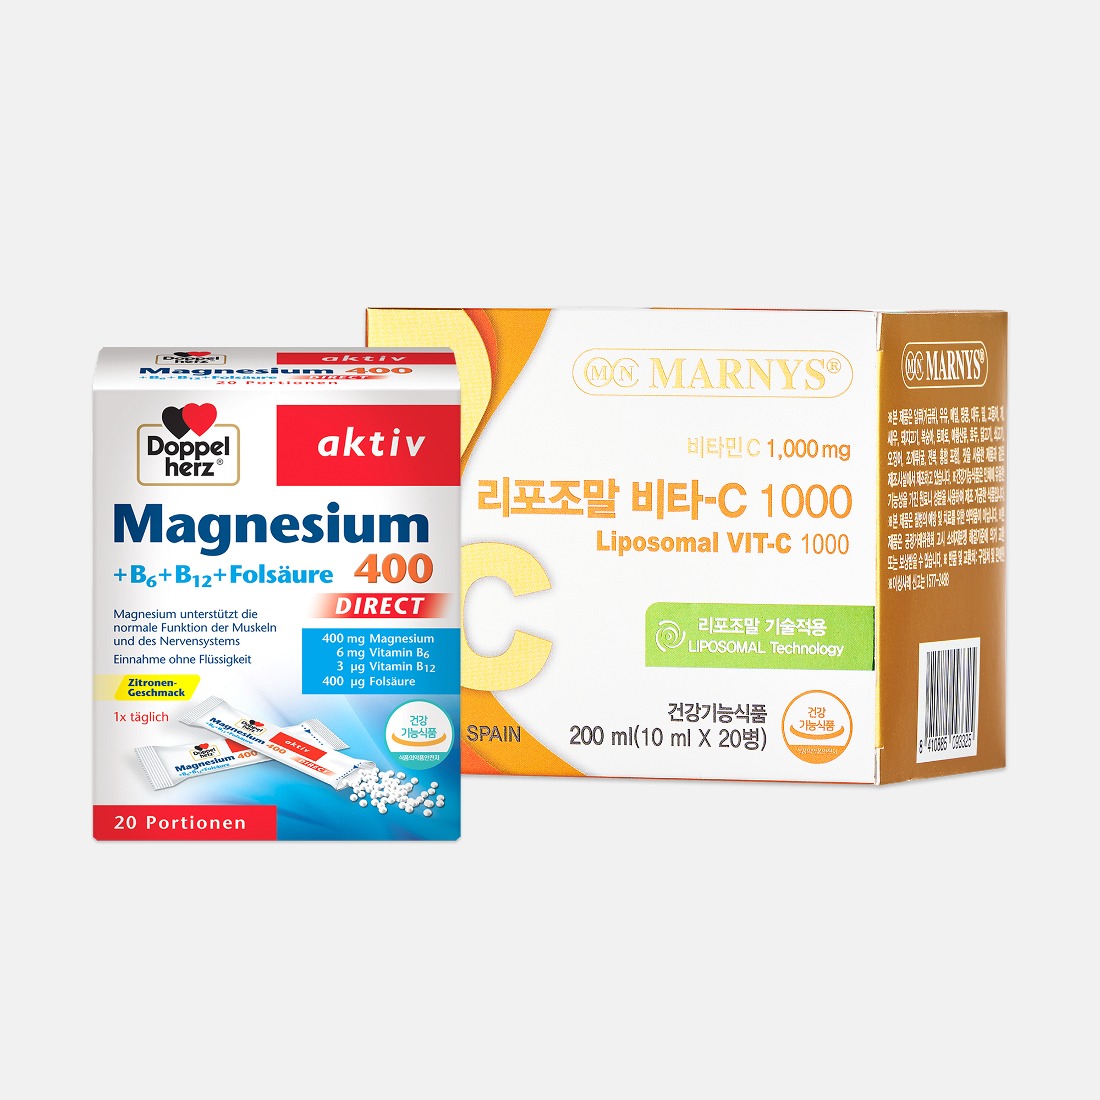 [20일분 스타터팩] 도펠헤르츠 마그네슘400 (20포) + 마니스 리포조말 비타C 1000(20병)